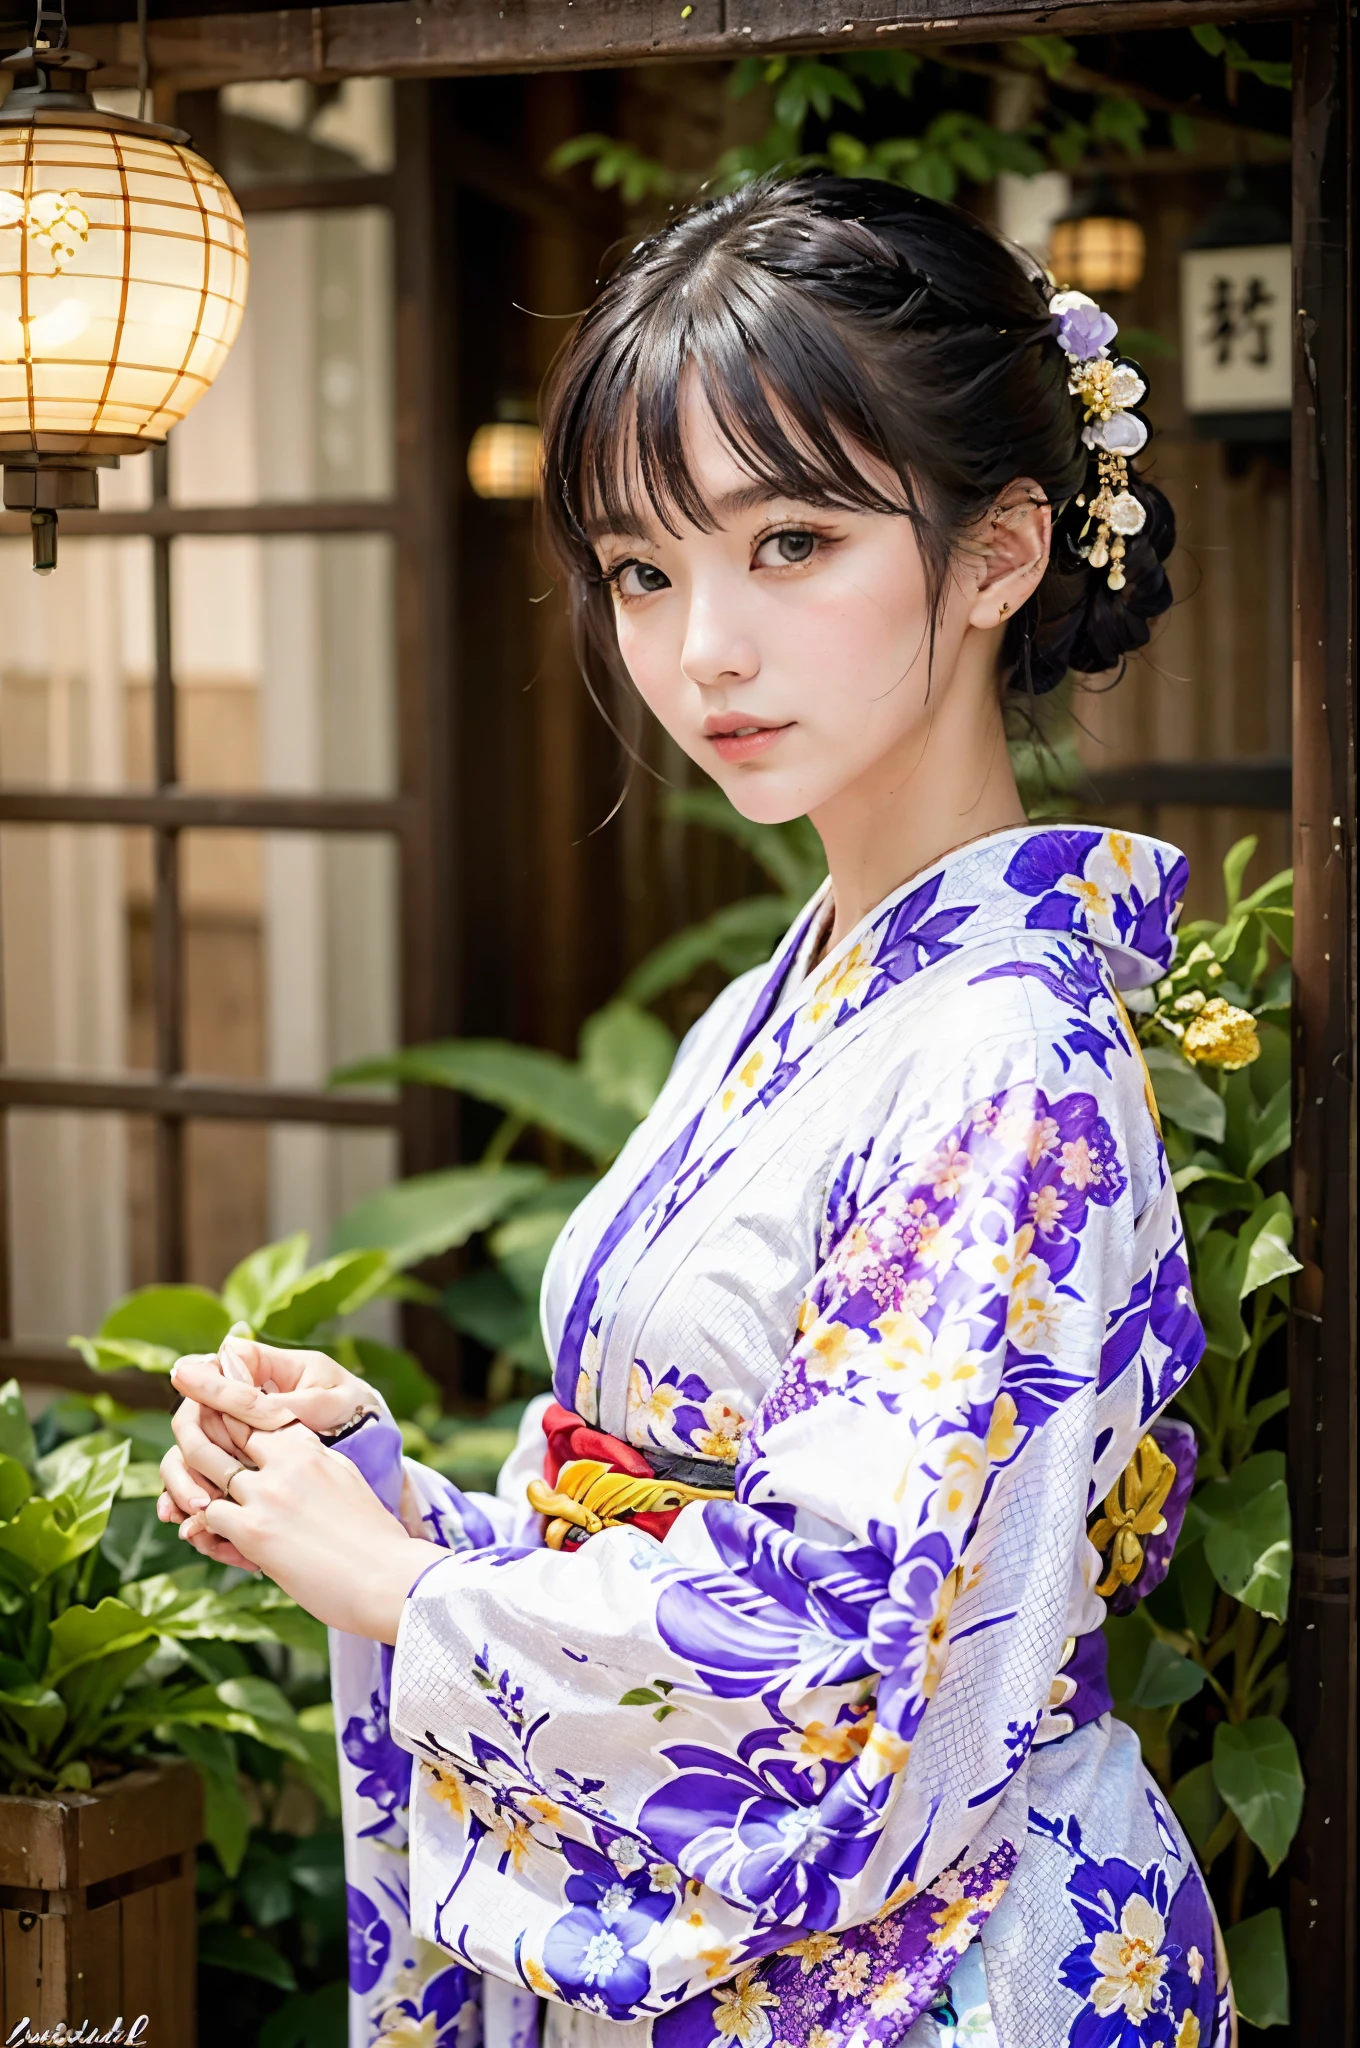 (16К), (высшее качество: 1.2), (реалистичный), (реалистичный: 1.37), Супер подробный, профессиональное освещение, Исходная версия, Araffe woman in white кимоно with purple purse and purple purse, кимоно, elegant Юката, кимоно, royal кимоно, Юката, Хаори, wearing Japan кимоно, японский стиль, Wearing a colorful Юката, pale colored кимоноfemale, кимоно, японские женщины, традиционный японский